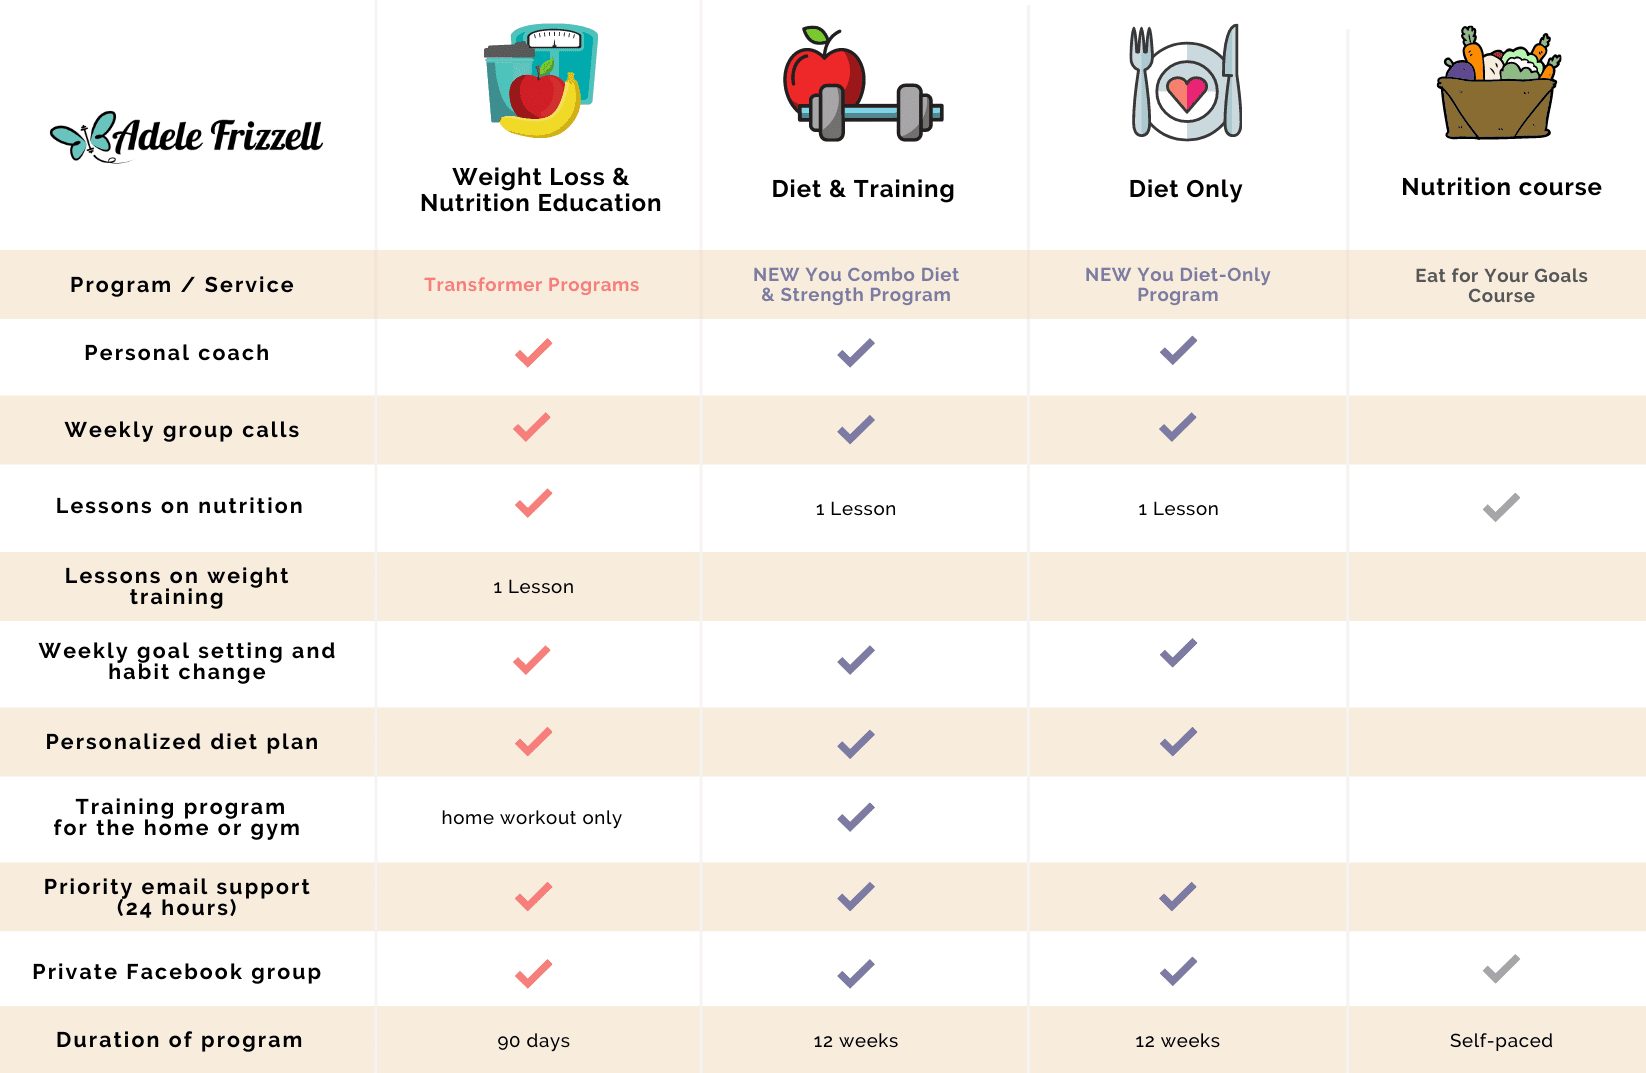 Program Features comparison